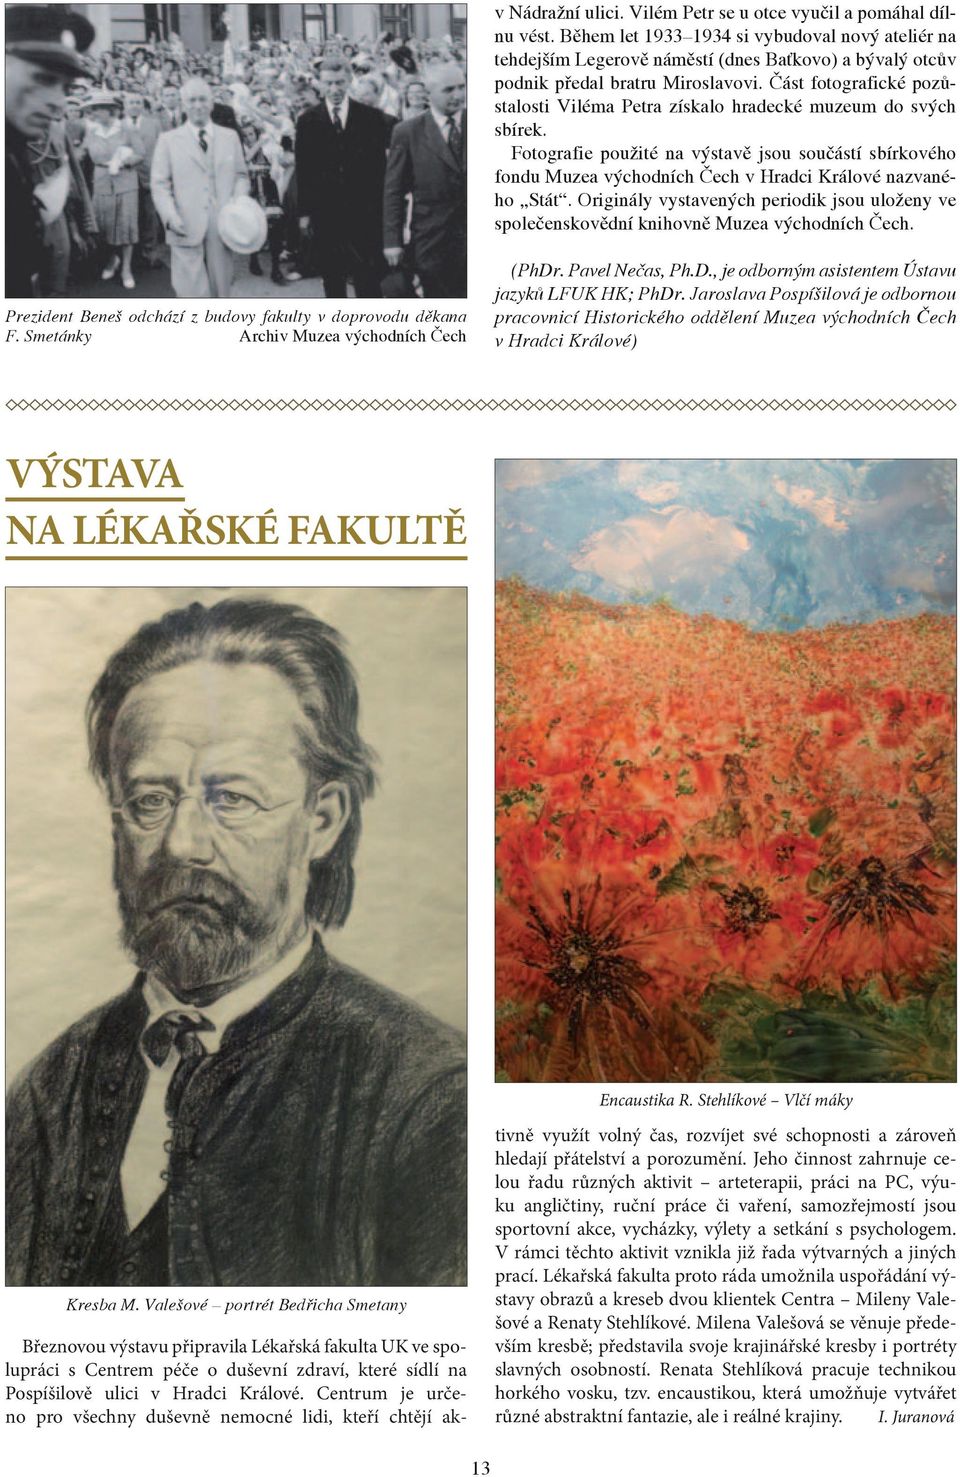 Část fotografické pozůstalosti Viléma Petra získalo hradecké muzeum do svých sbírek. Fotografie použité na výstavě jsou součástí sbírkového fondu Muzea východních Čech v Hradci Králové nazvaného Stát.